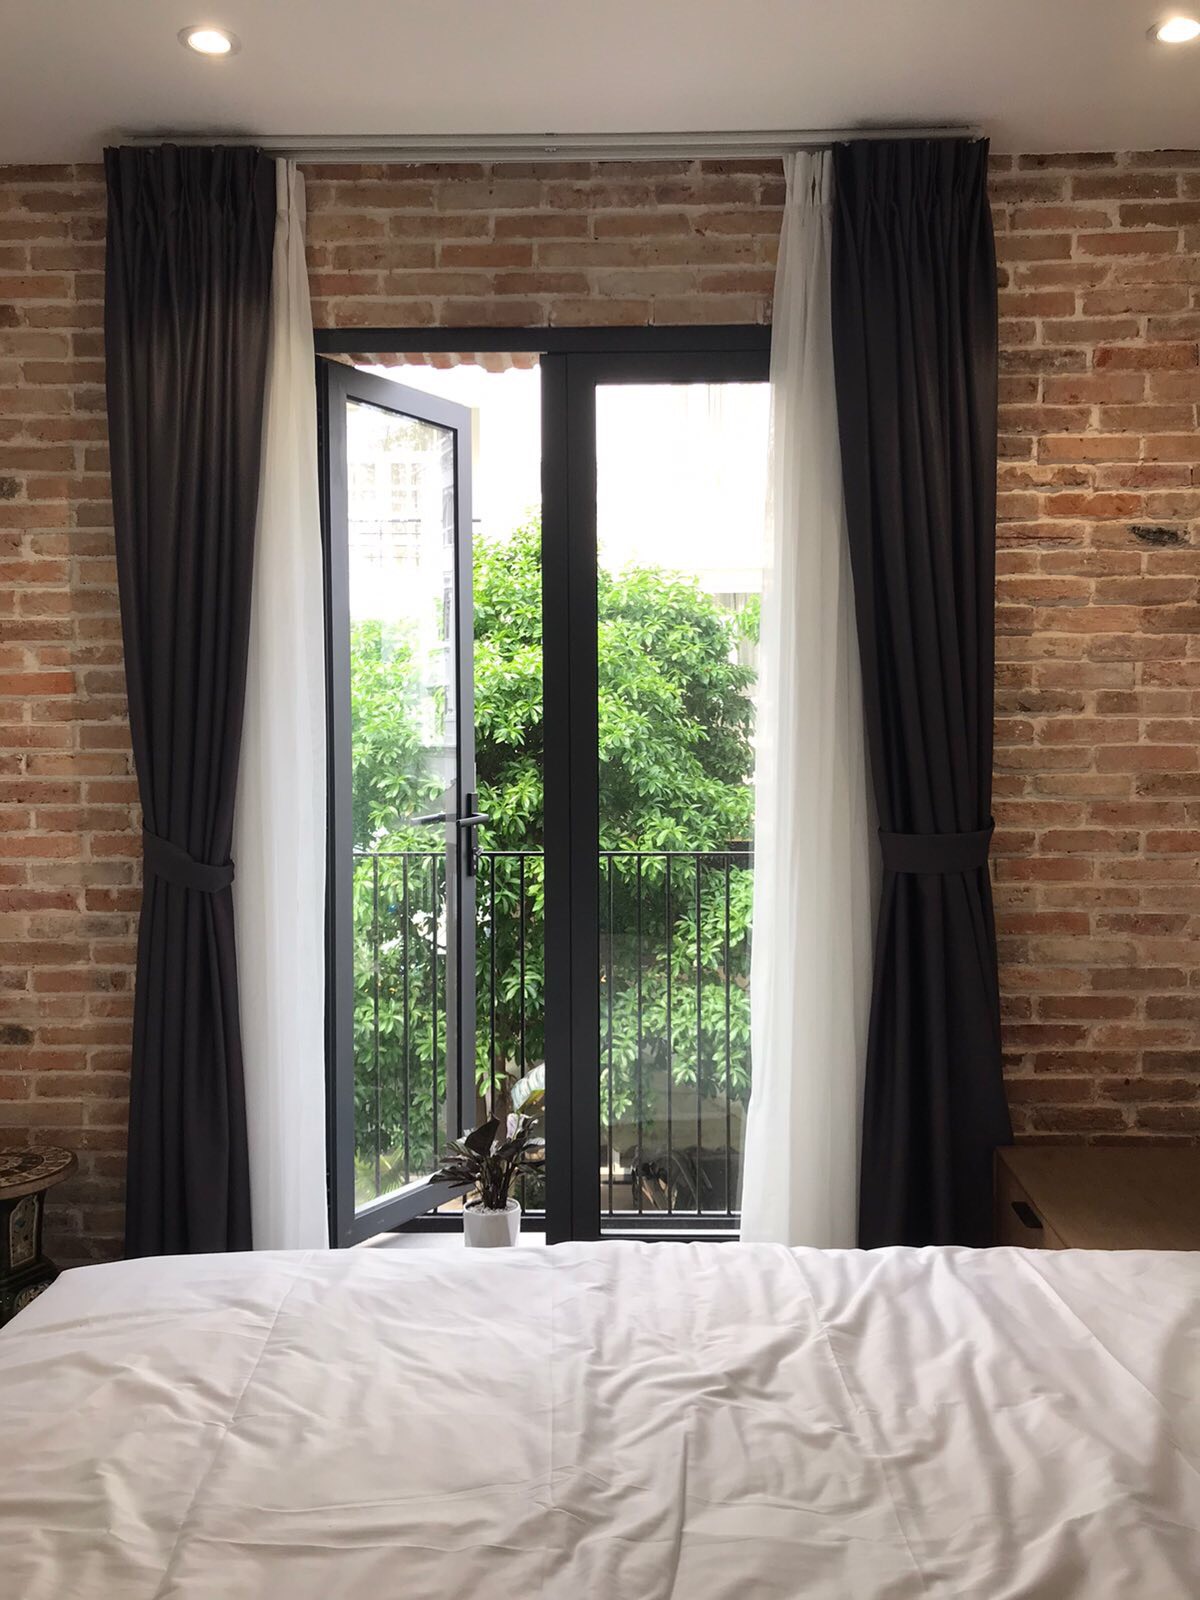 Cho thuê căn hộ dịch vụ đẹp kiểu studio trong Phú Mỹ Hưng, Q7 (7 triệu/tháng)